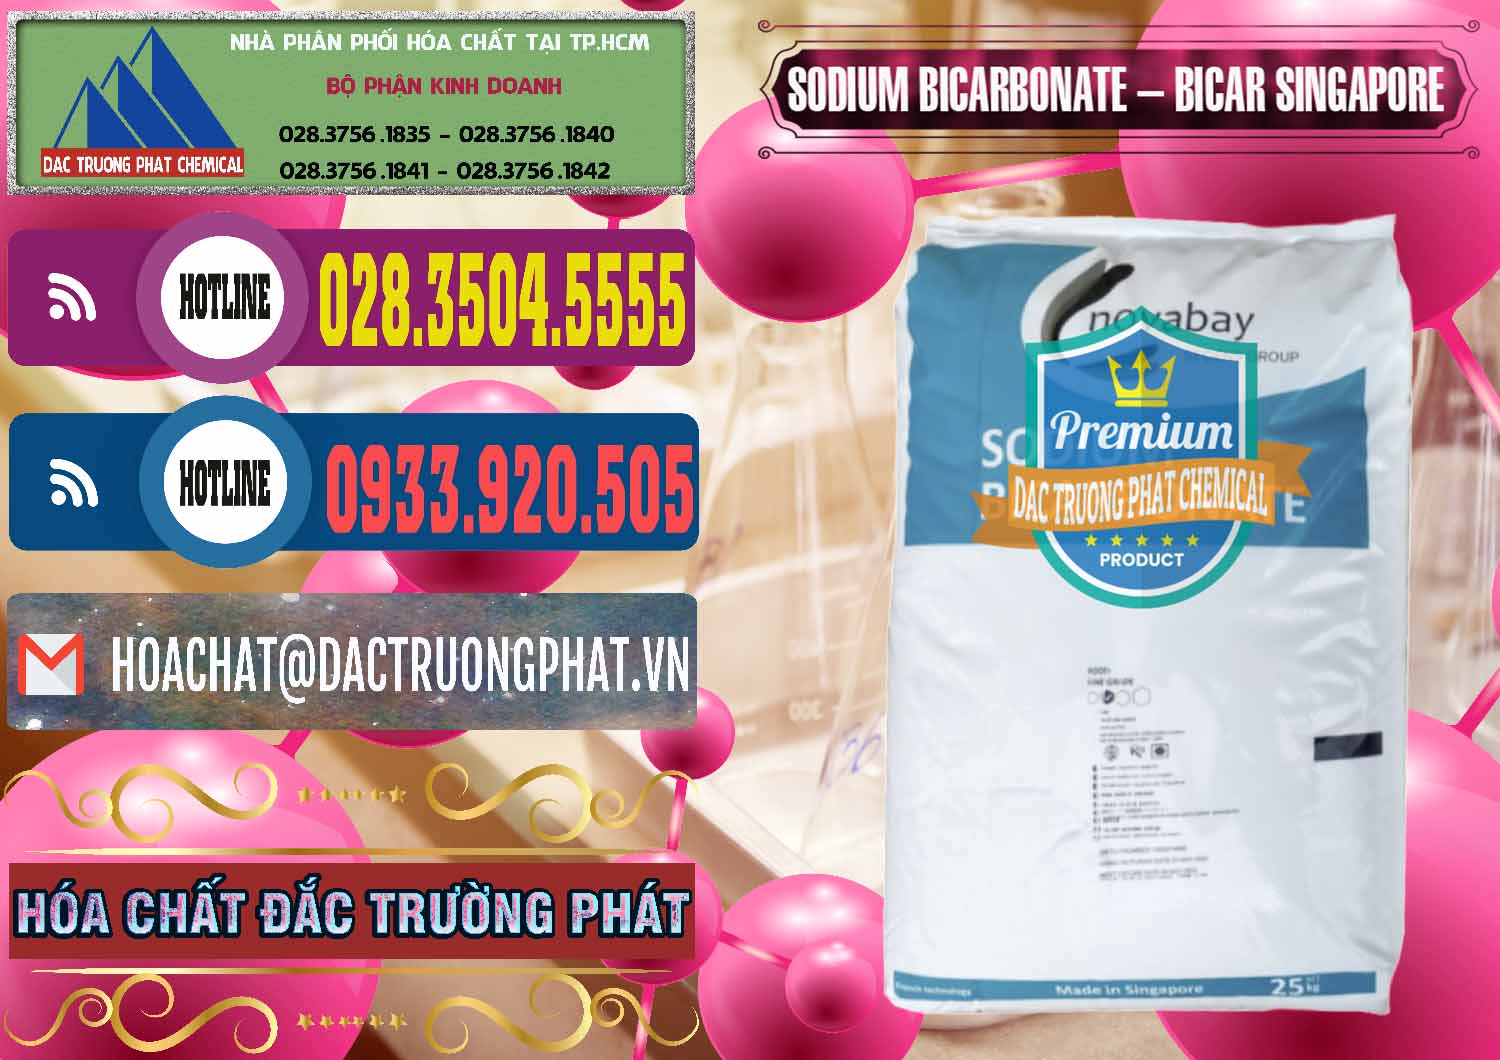 Nơi chuyên cung cấp - bán Sodium Bicarbonate – Bicar NaHCO3 Singapore - 0411 - Chuyên kinh doanh & phân phối hóa chất tại TP.HCM - muabanhoachat.com.vn